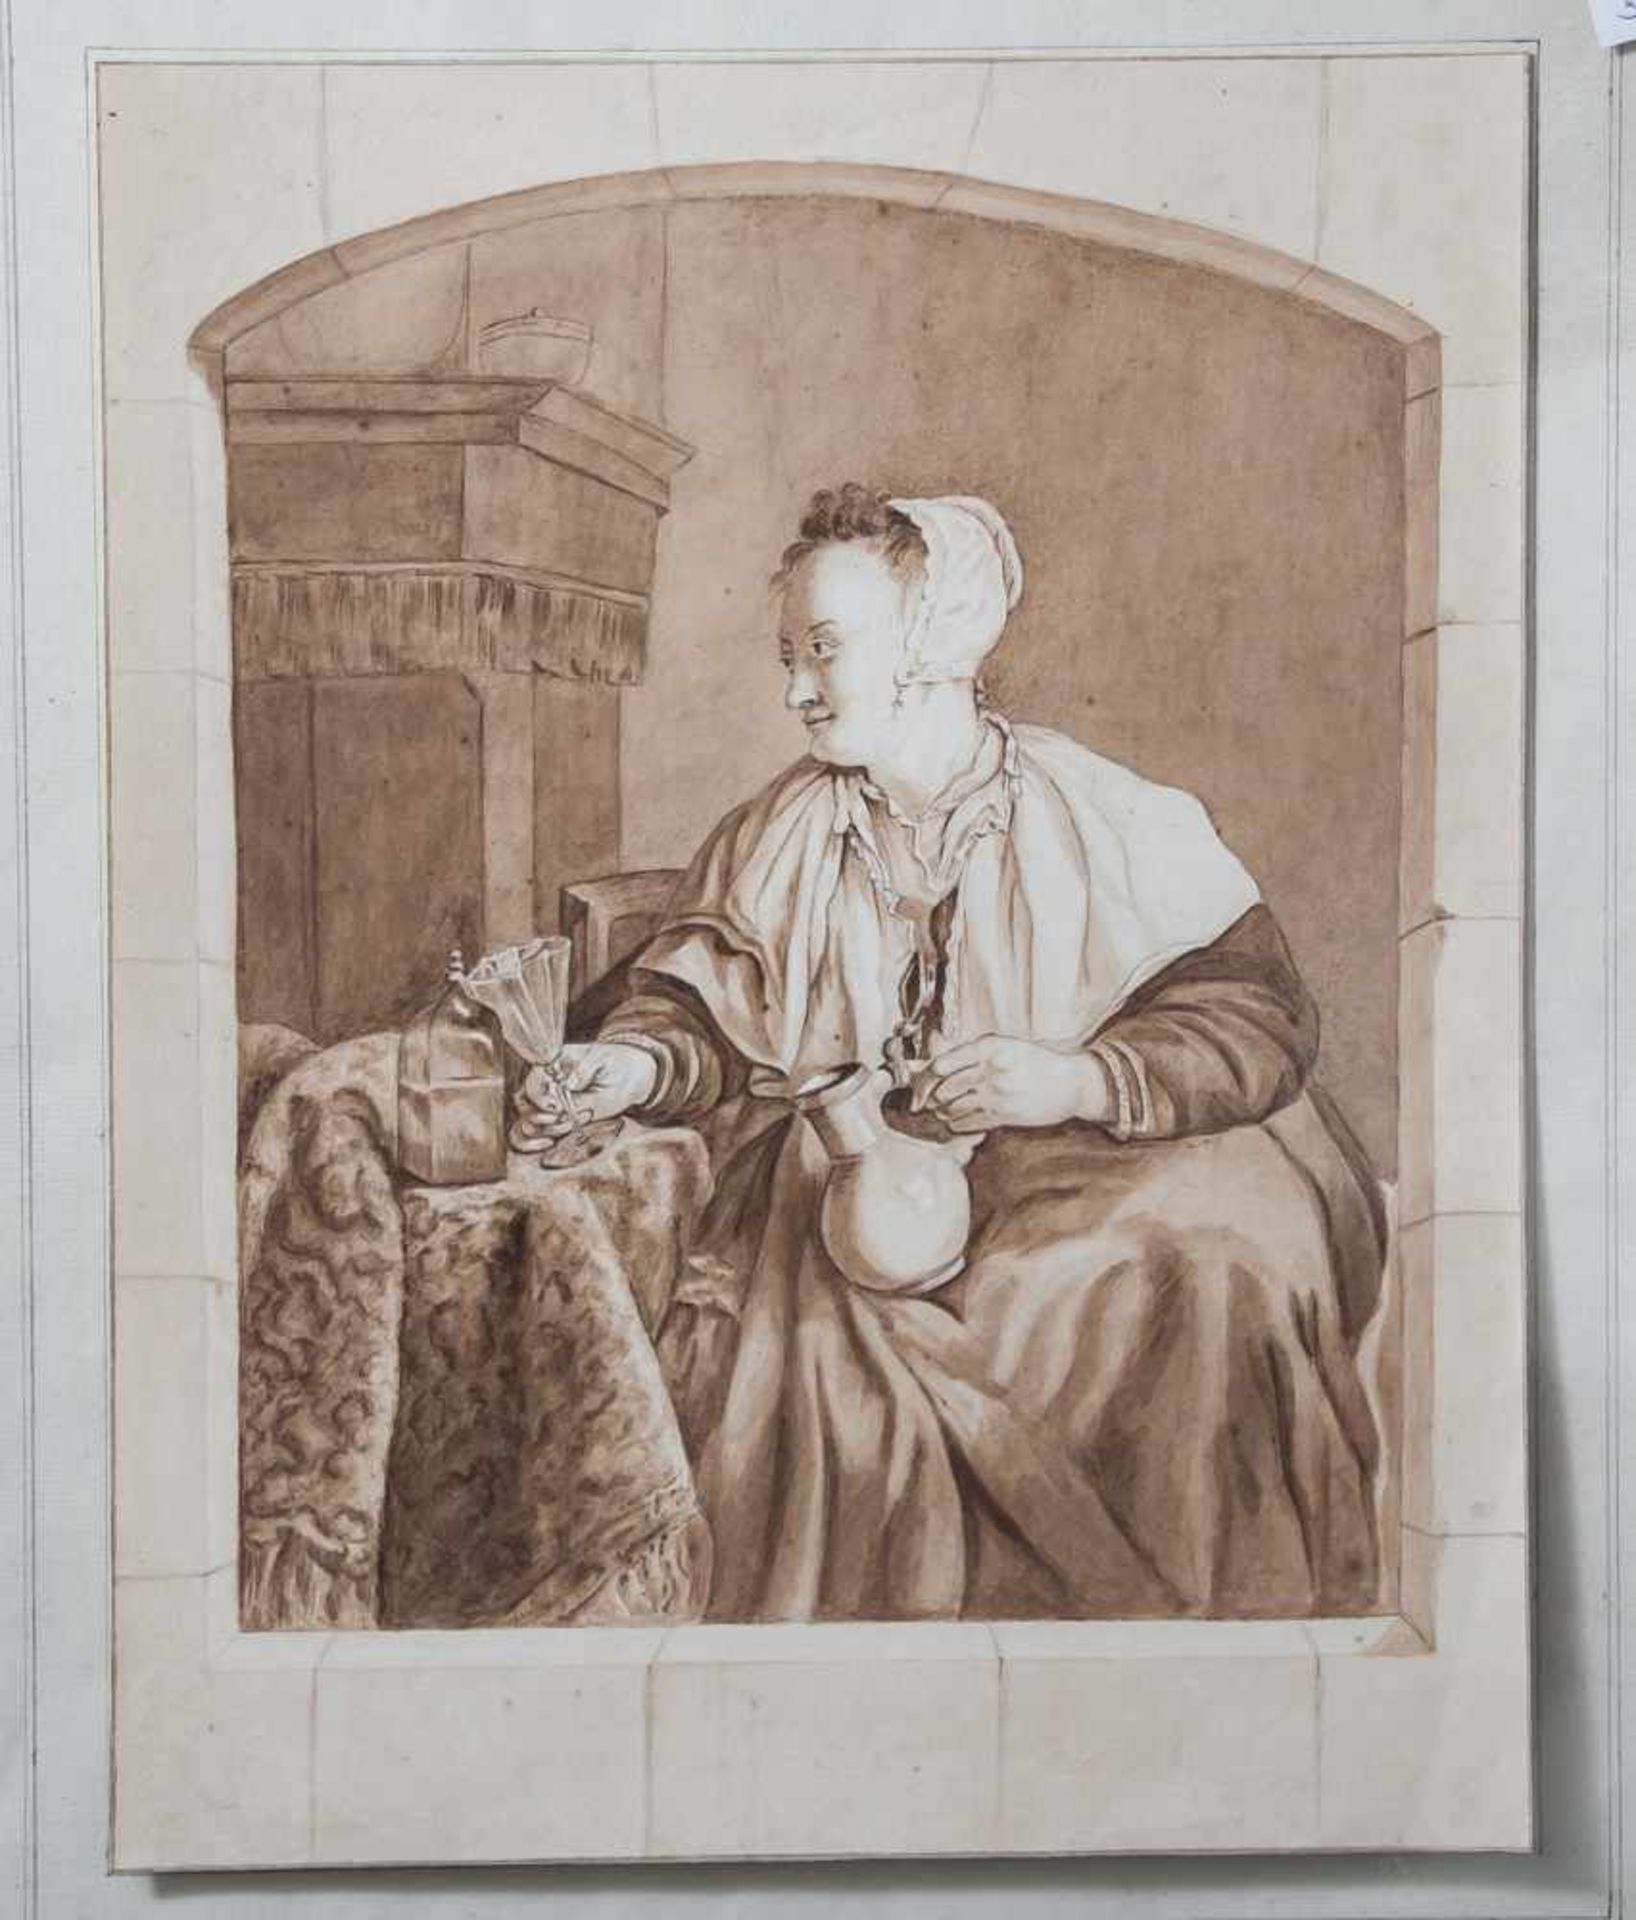 Poelman, C. (18./19. Jahrhundert), Bauersfrau mit Glas u. Krug in den Händen, Aquarell in Braun-